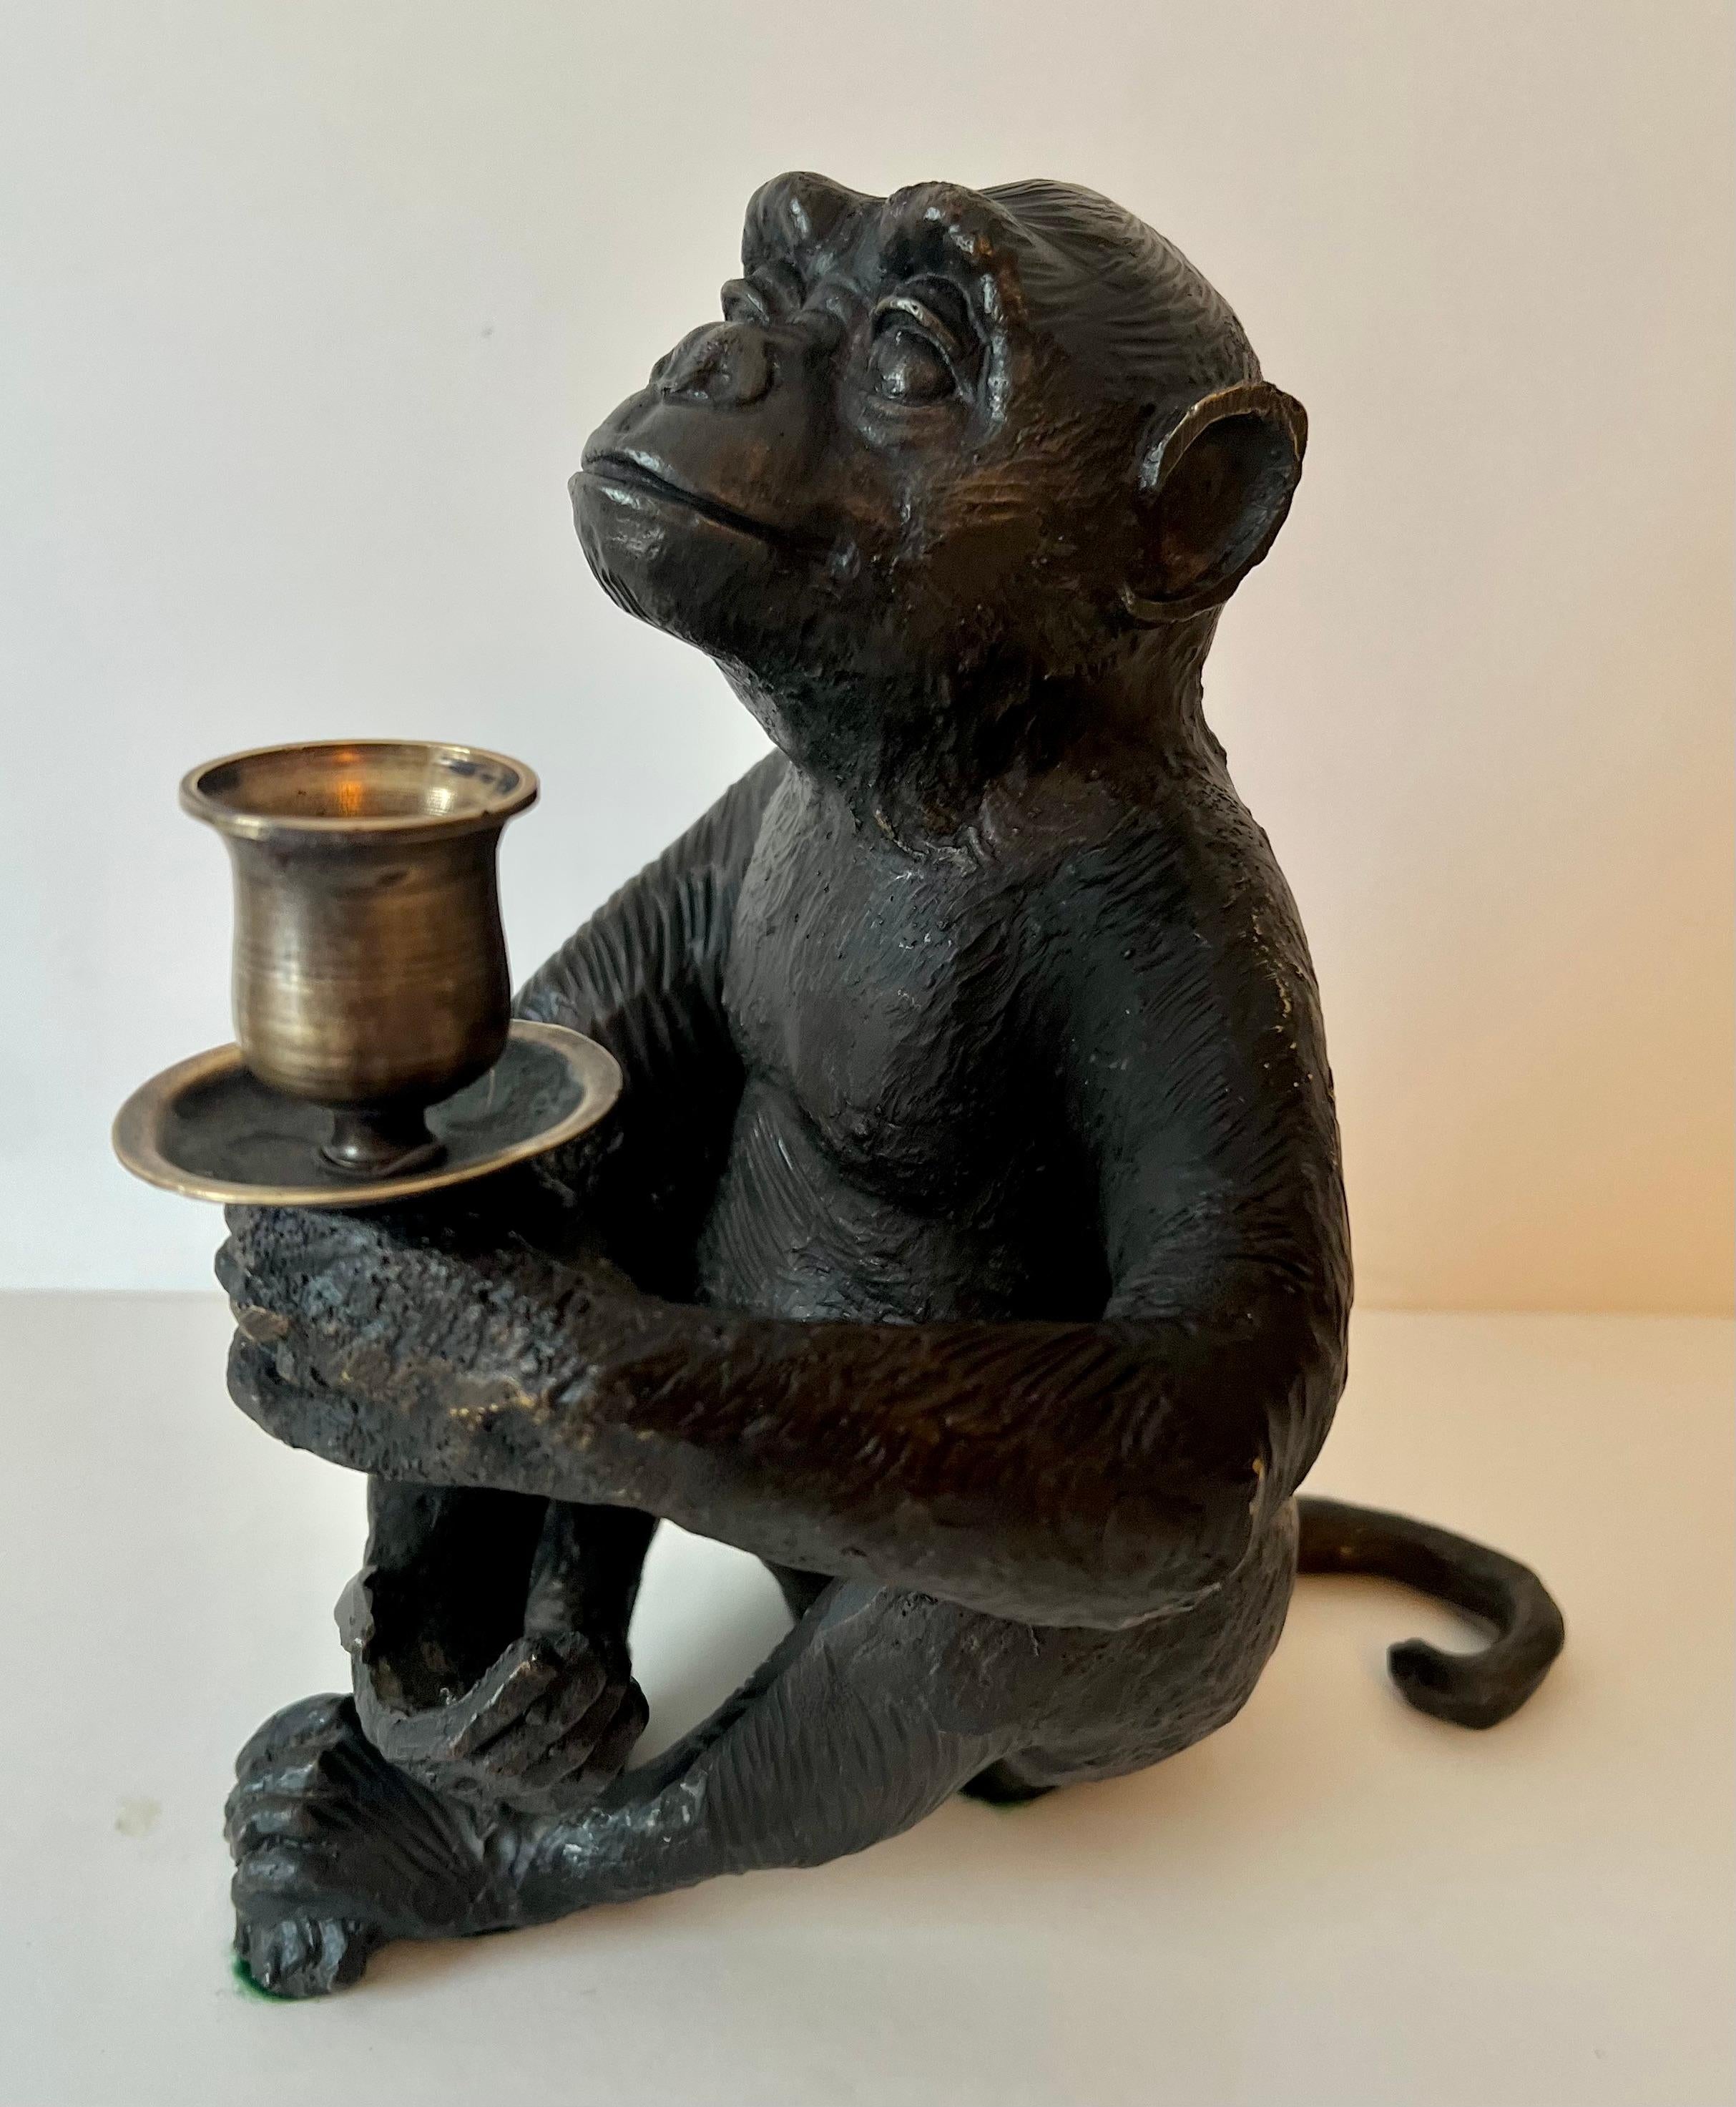 Bronze Affe Kerzenhalter. ein Kompliment für viele Einstellungen oder Arrangements von Kerzenhalter - Affen sind sehr beliebt und bringen gute Energie... 
Das Gewicht und das Aussehen sind sehr schön - passt in viele Räume, von DEN, bis zum Büro